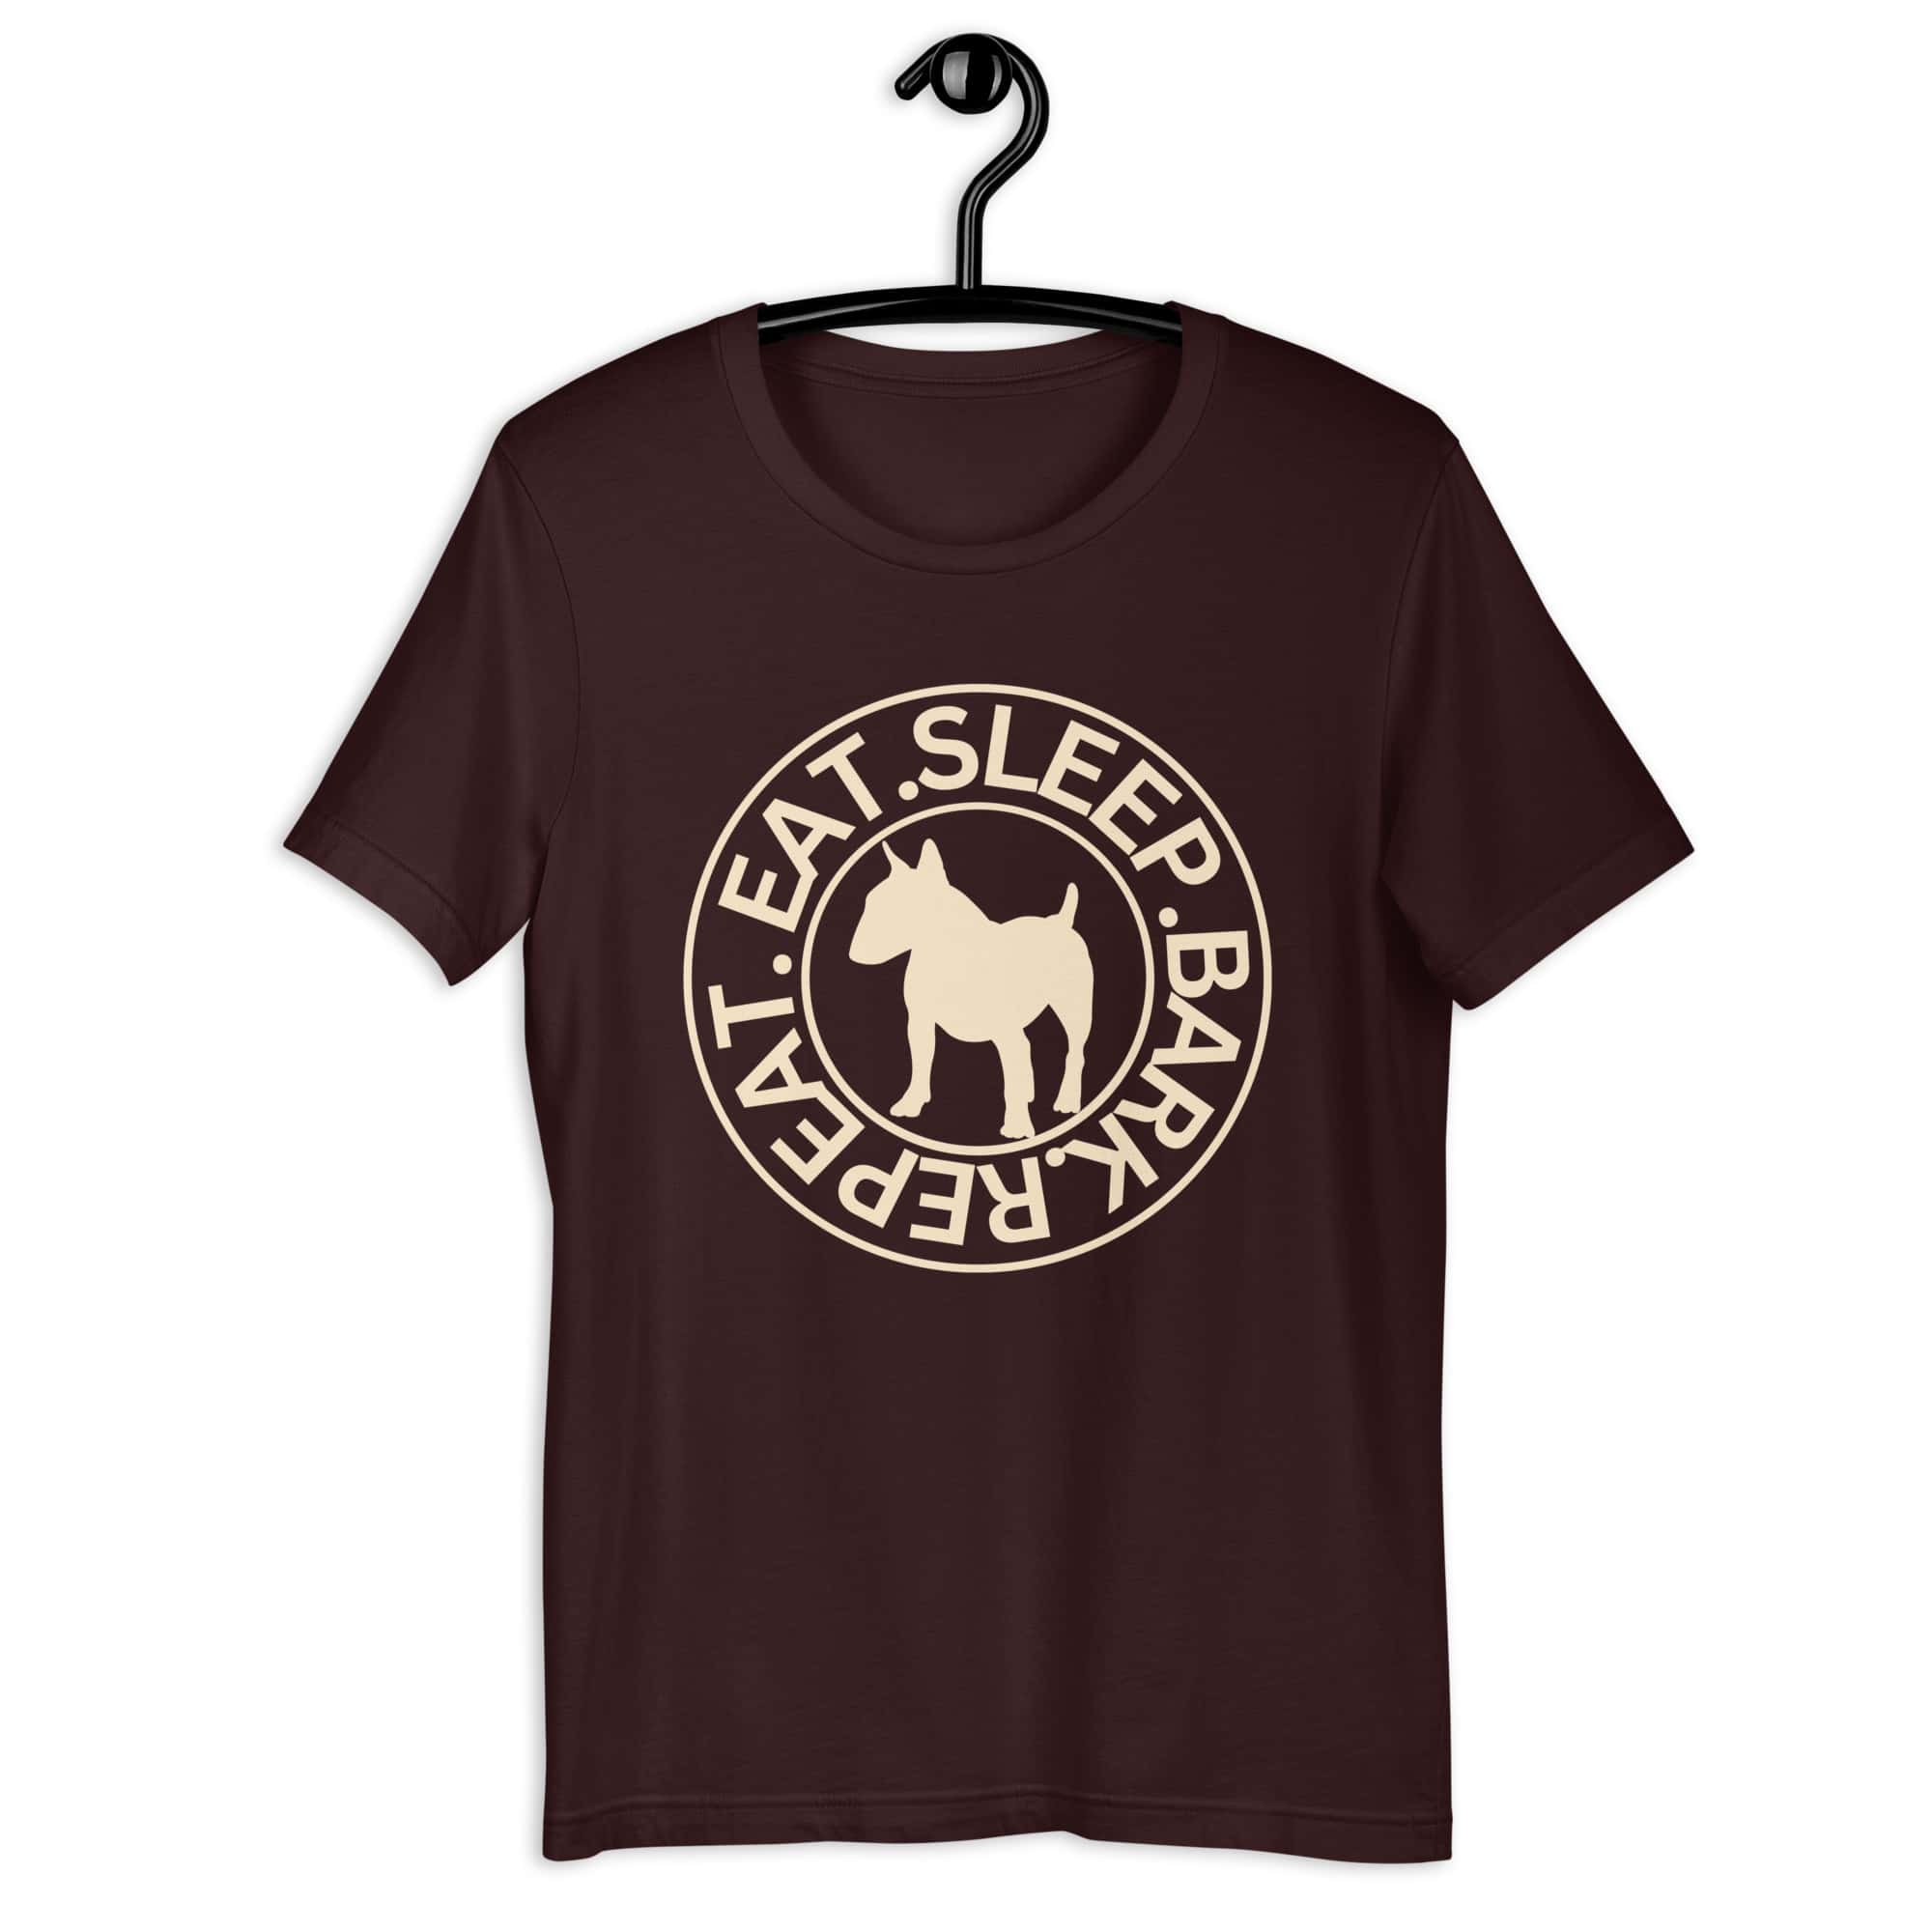 Eat Sleep Bark Repeat Bull Terrier Unisex T-Shirt. Oxblood Black